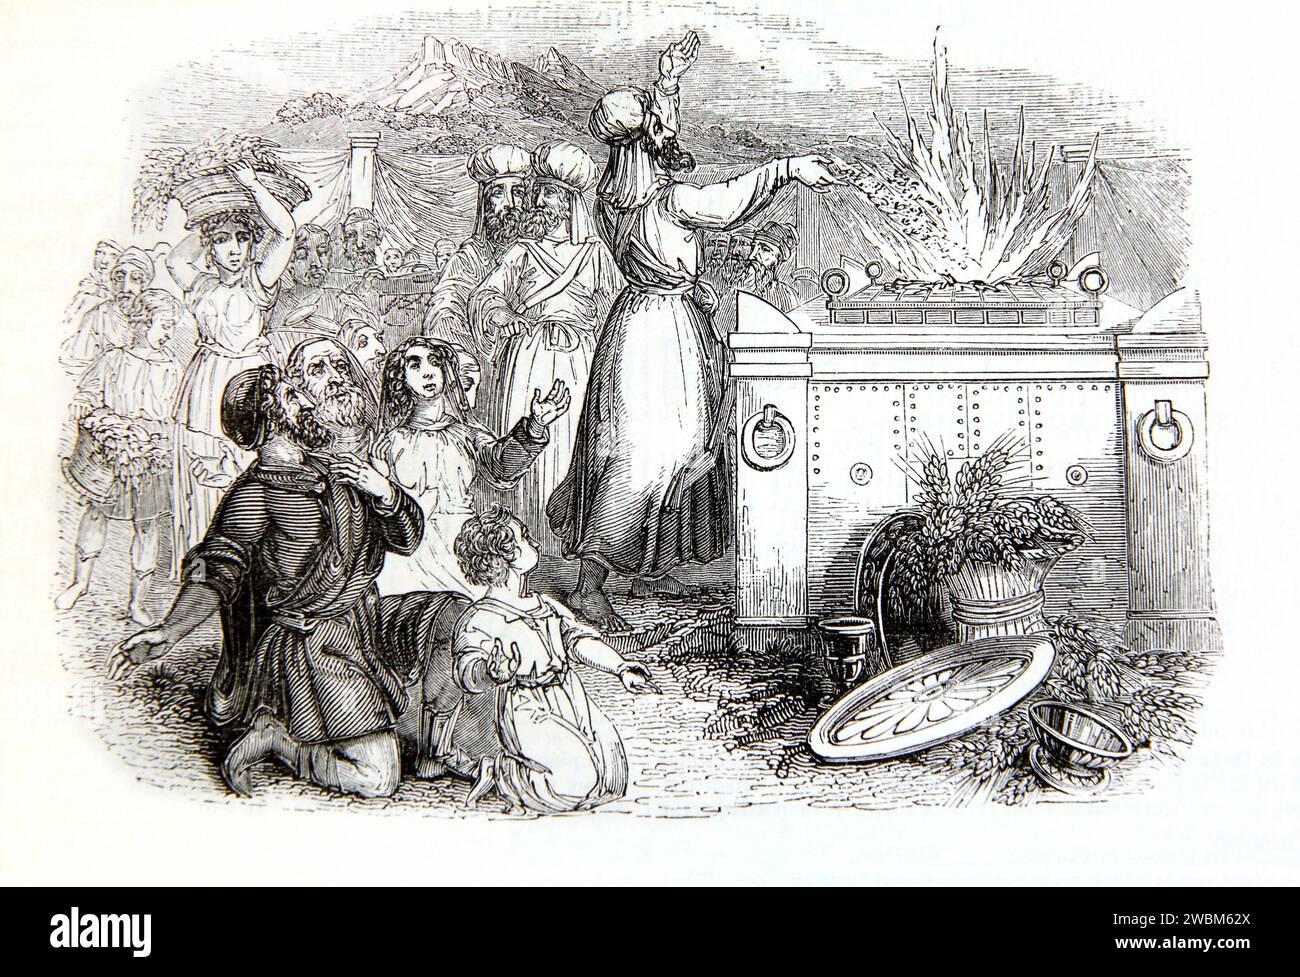 Gravure sur bois de l'offrande de viande à partir d'une peinture de Melville - grand prêtre à l'alter des offrandes brûlées de la Bible de famille illustrée Banque D'Images